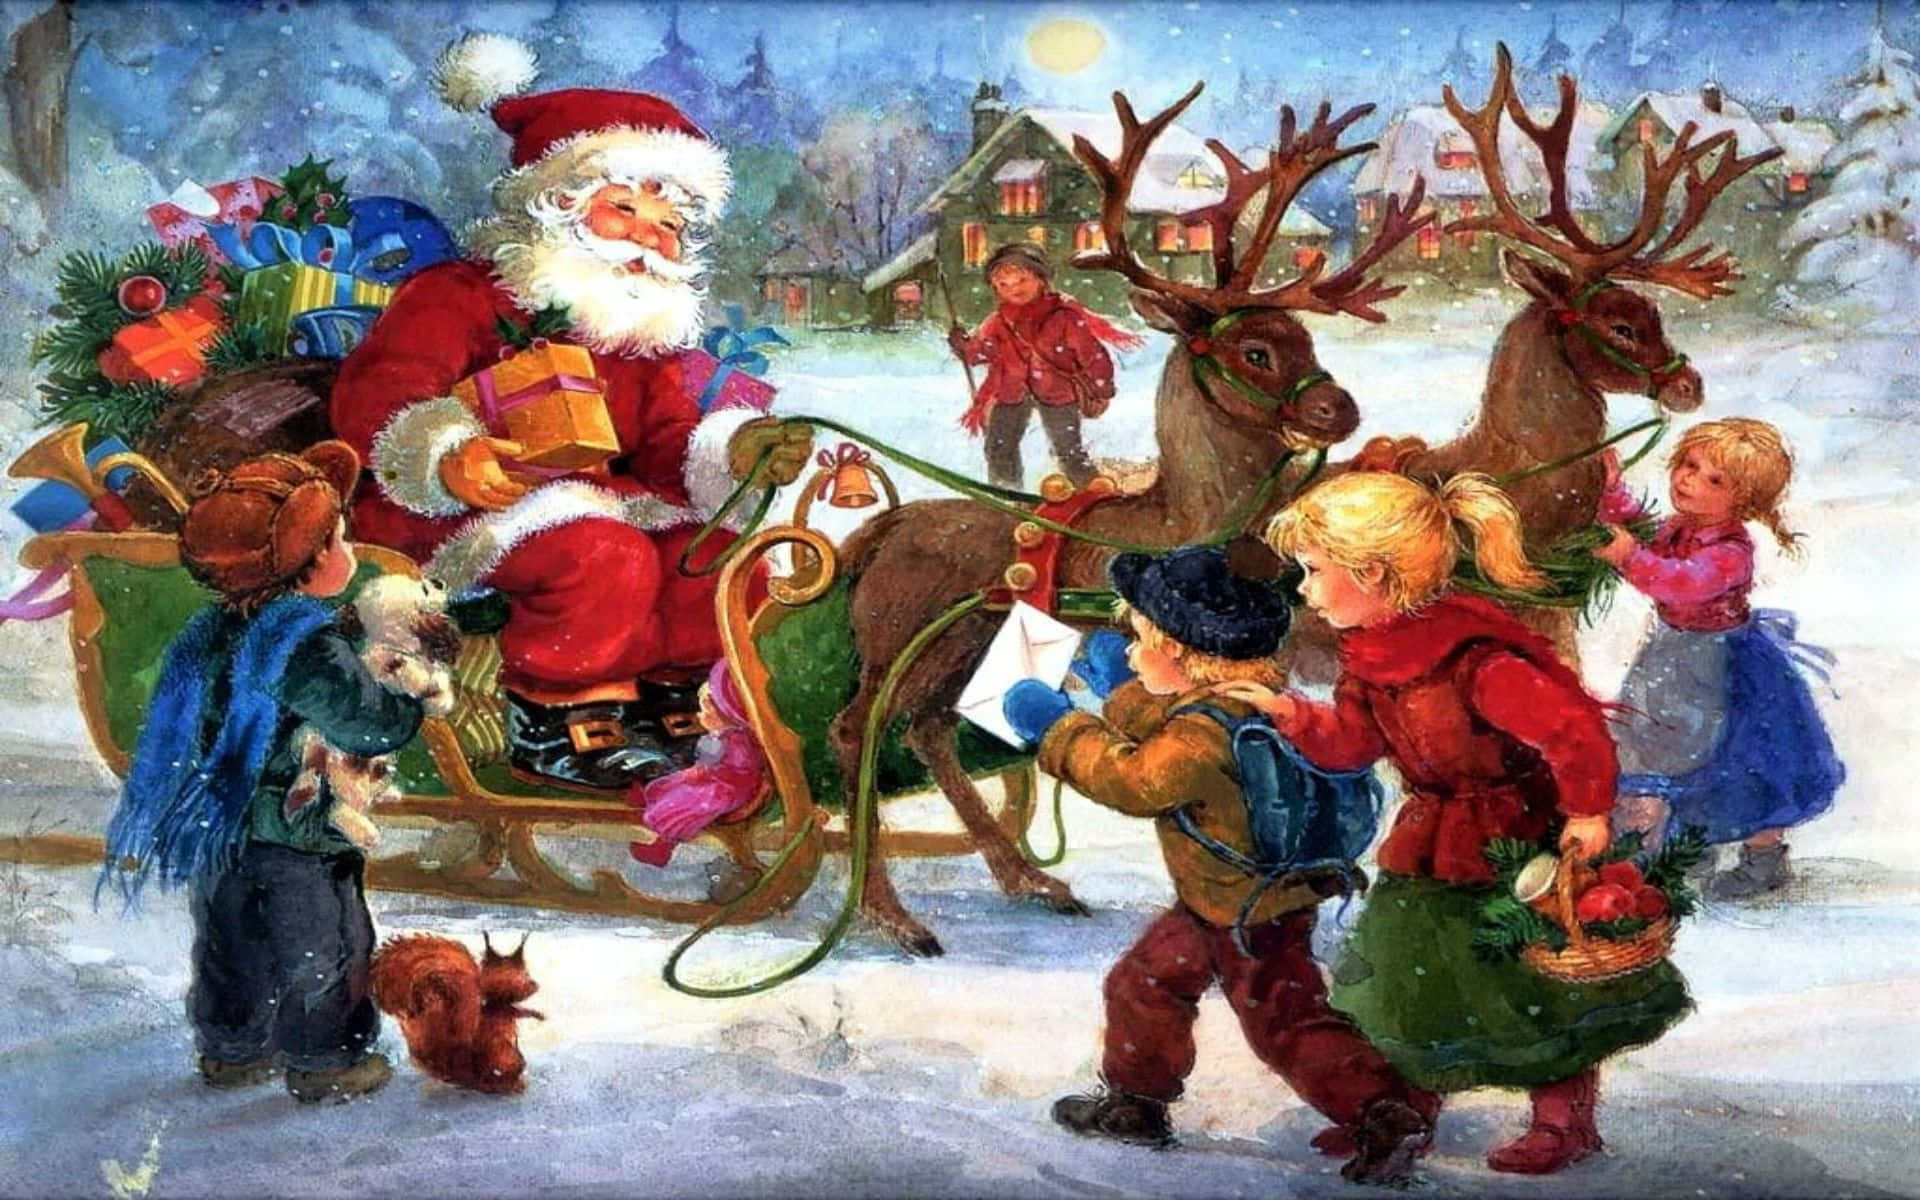 Et maleri af julemanden med børn og ren. Wallpaper